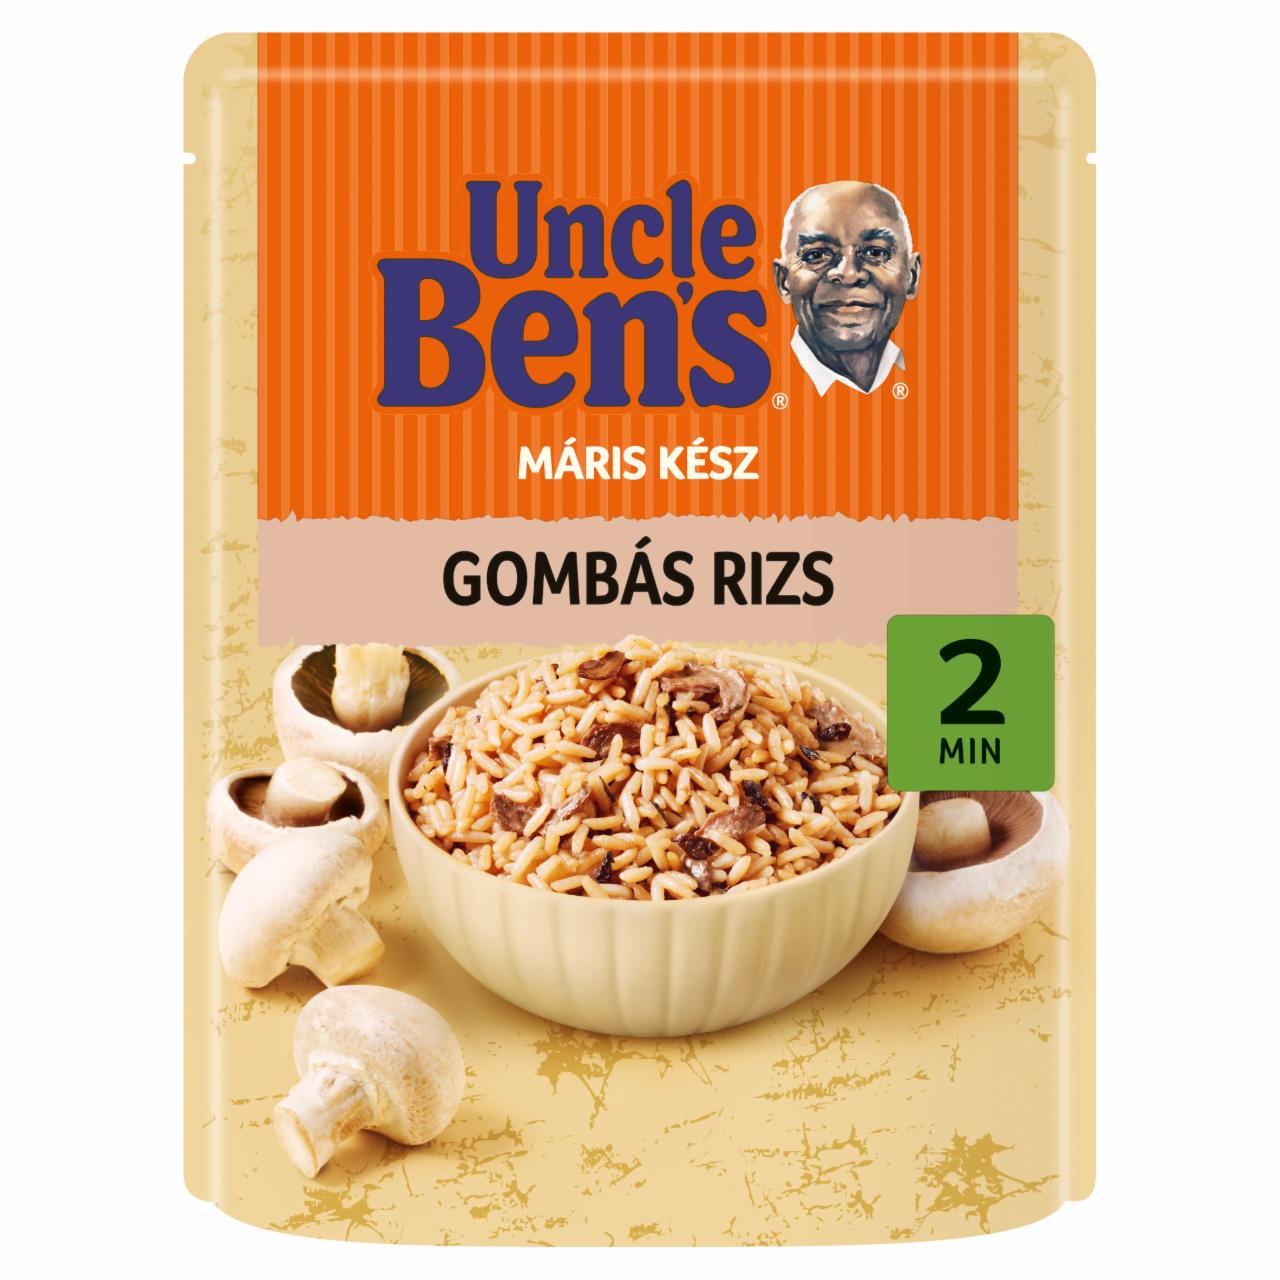 Képek - Uncle Ben's gombás rizs 250 g